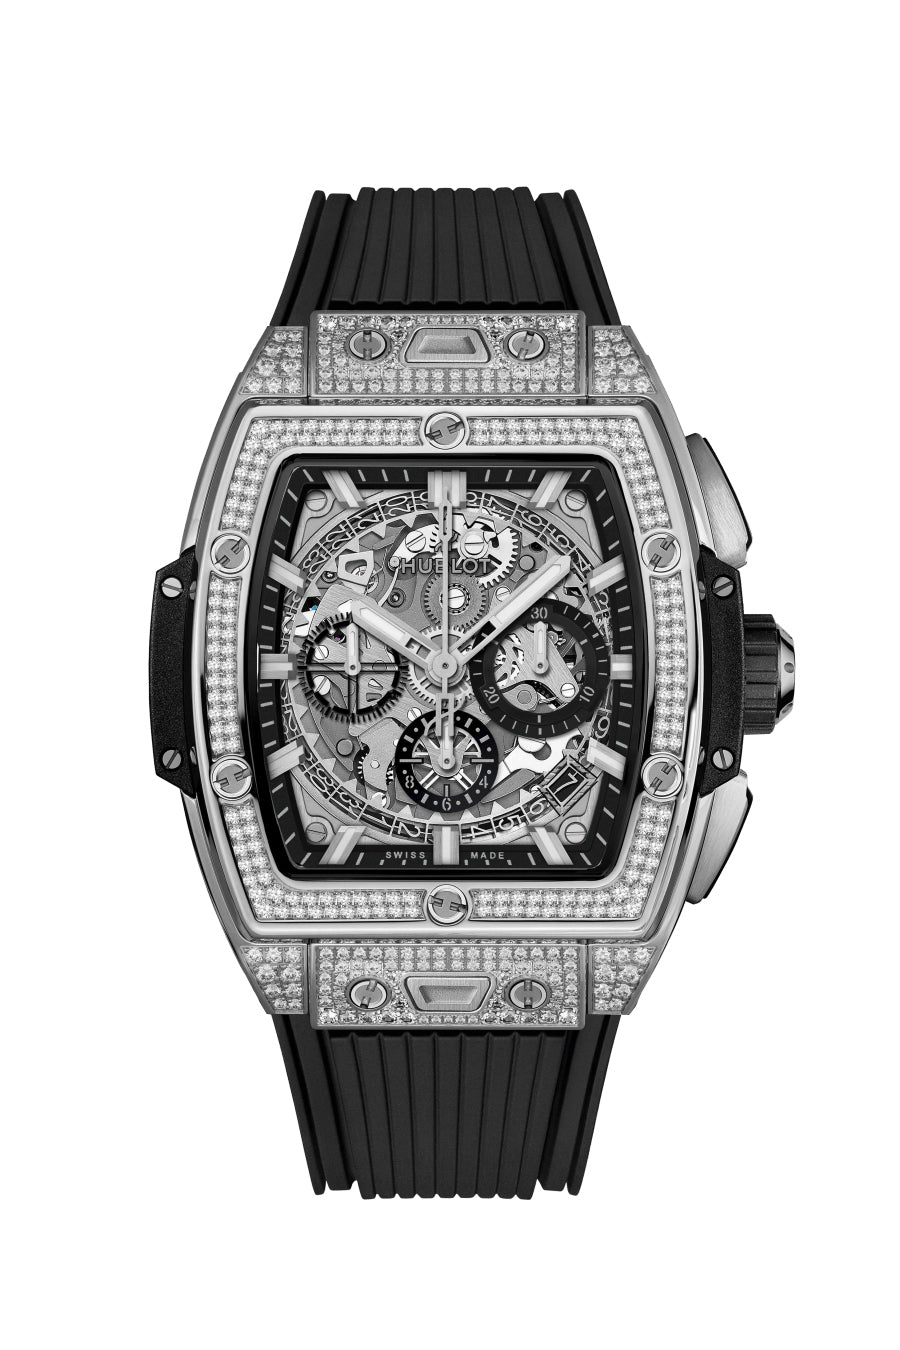 Hublot Spirit of Big Bang Chronograph Titanium & Diamonds Man's Watch